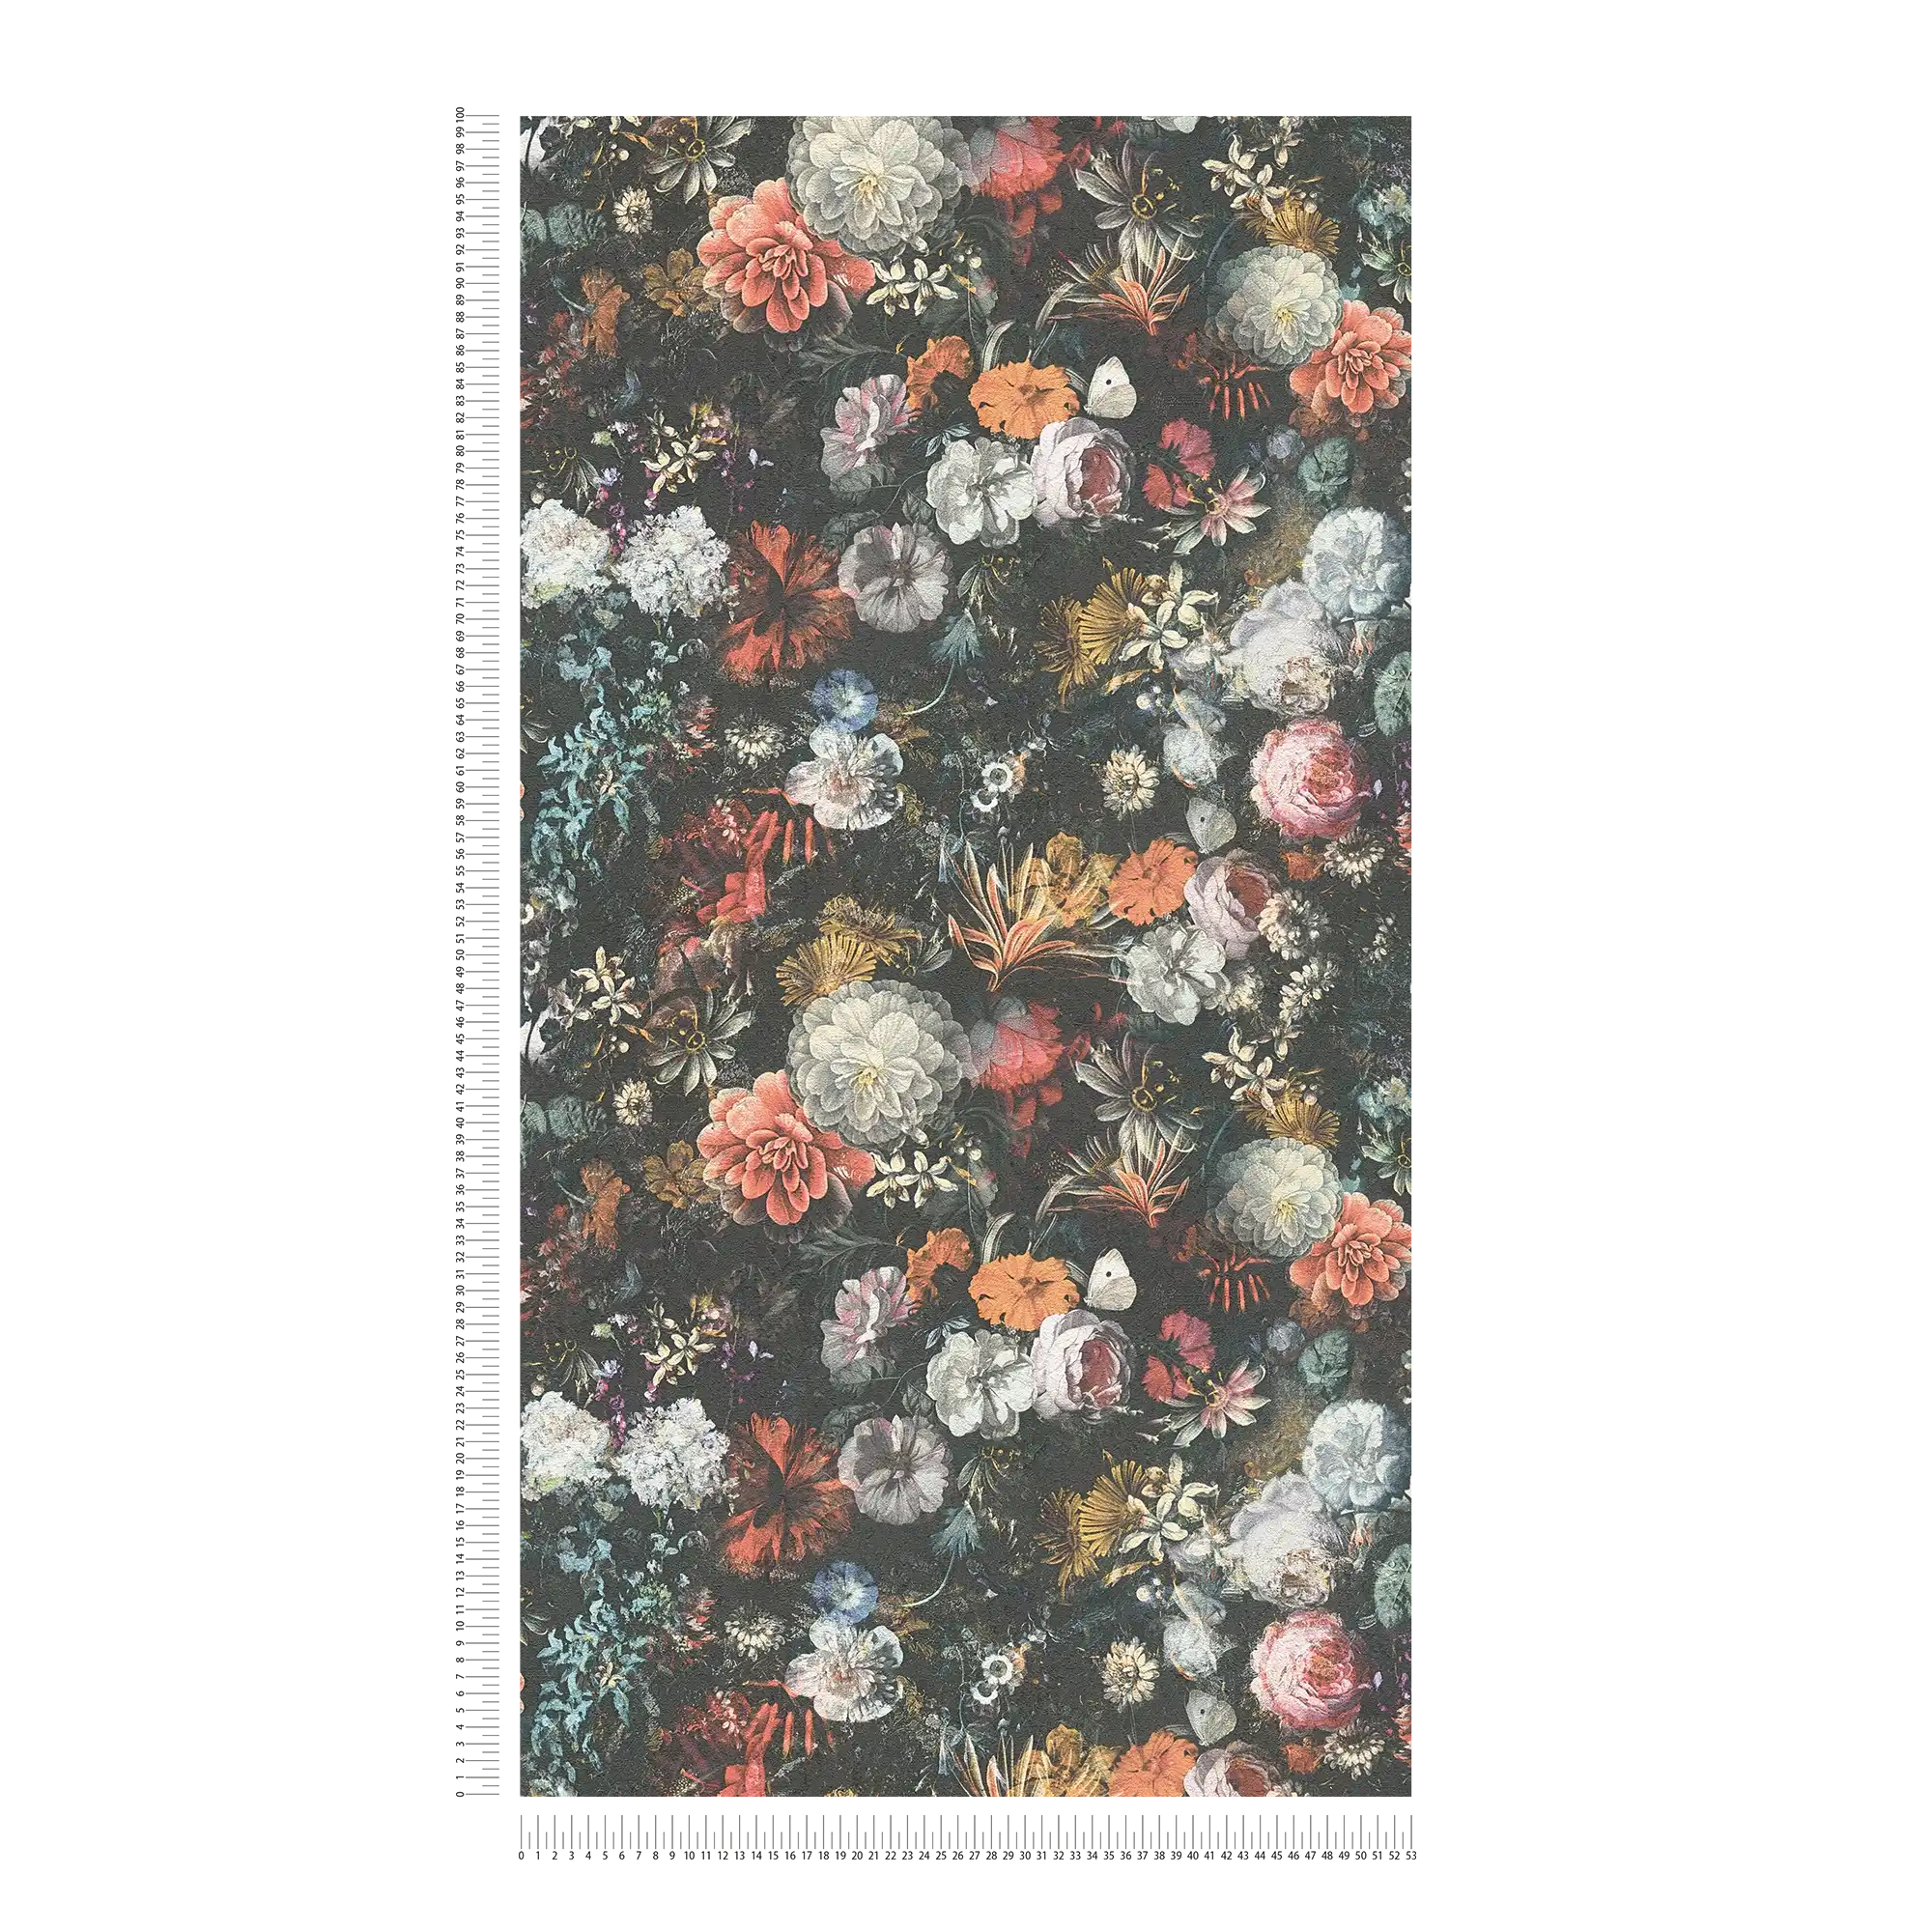             Bloemenbehang vintage ontwerp met rozen - kleurrijk, grijs, oranje
        